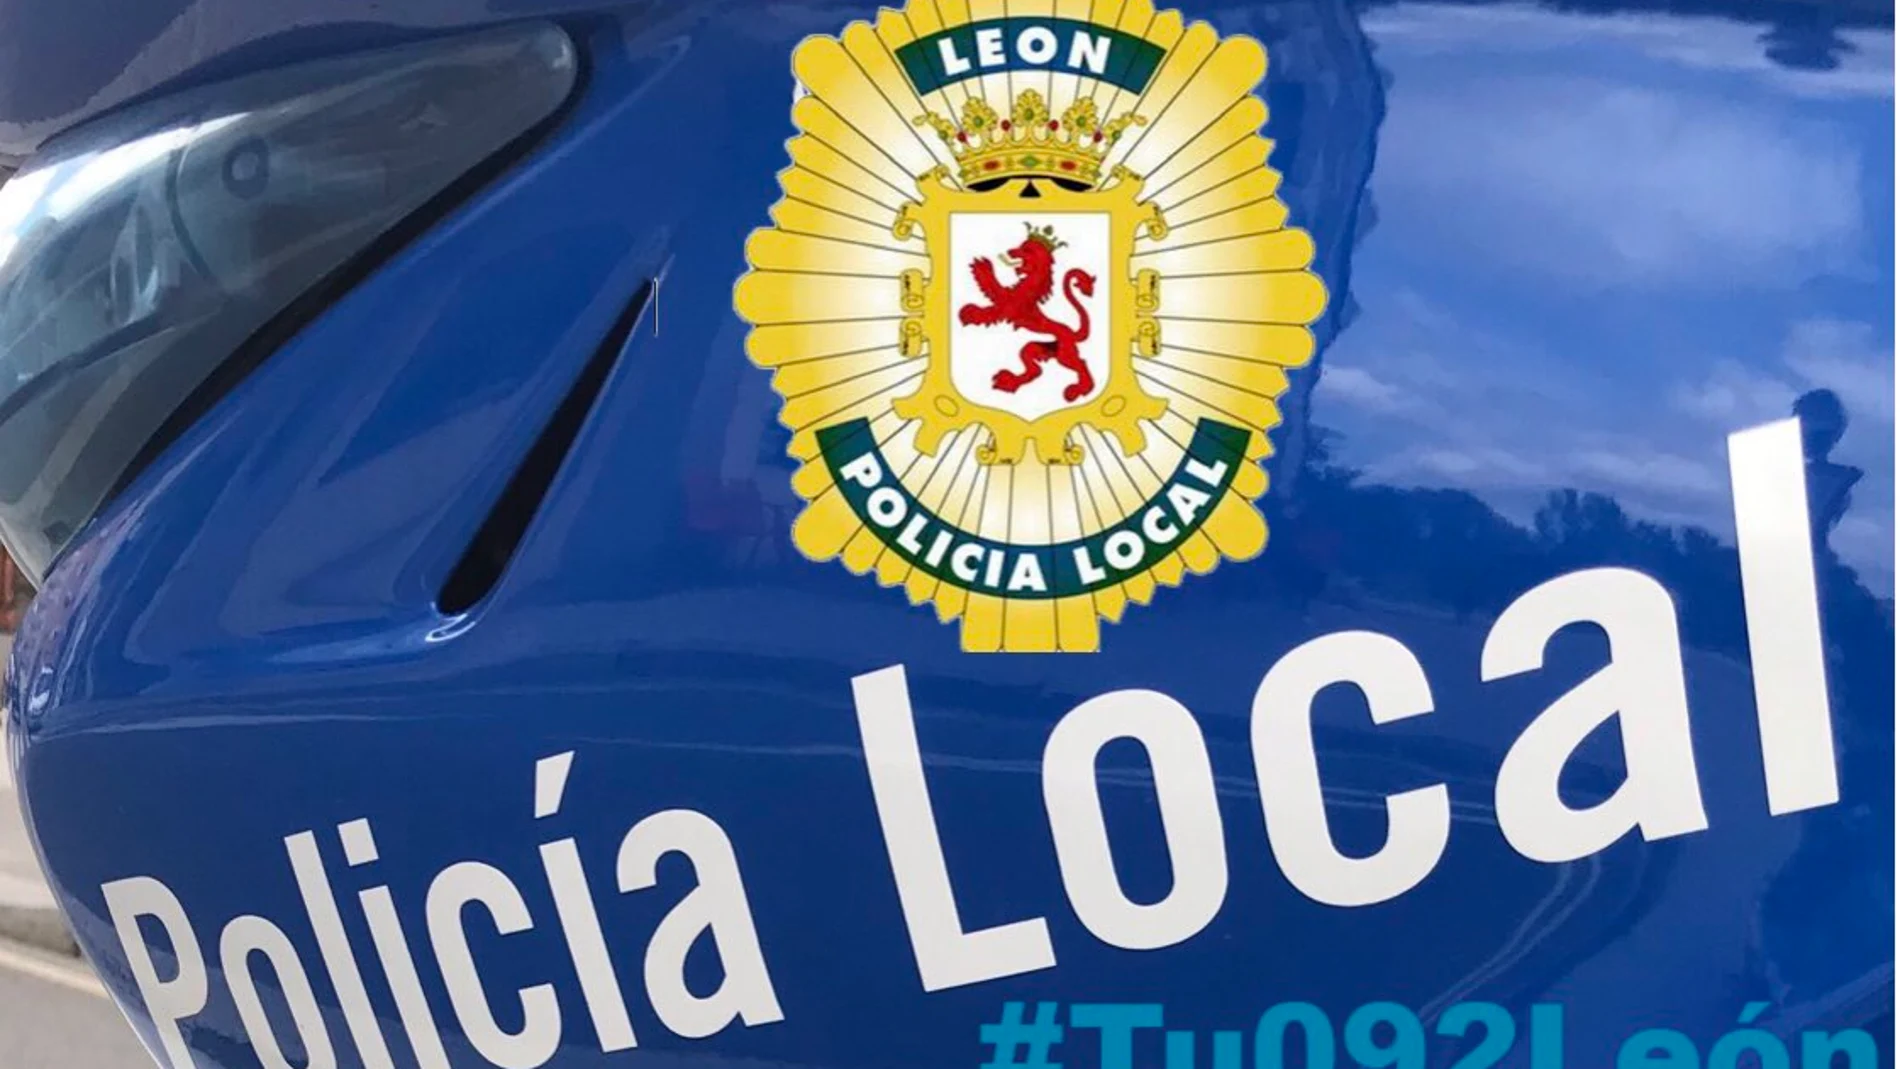 Coche de la policía local de León